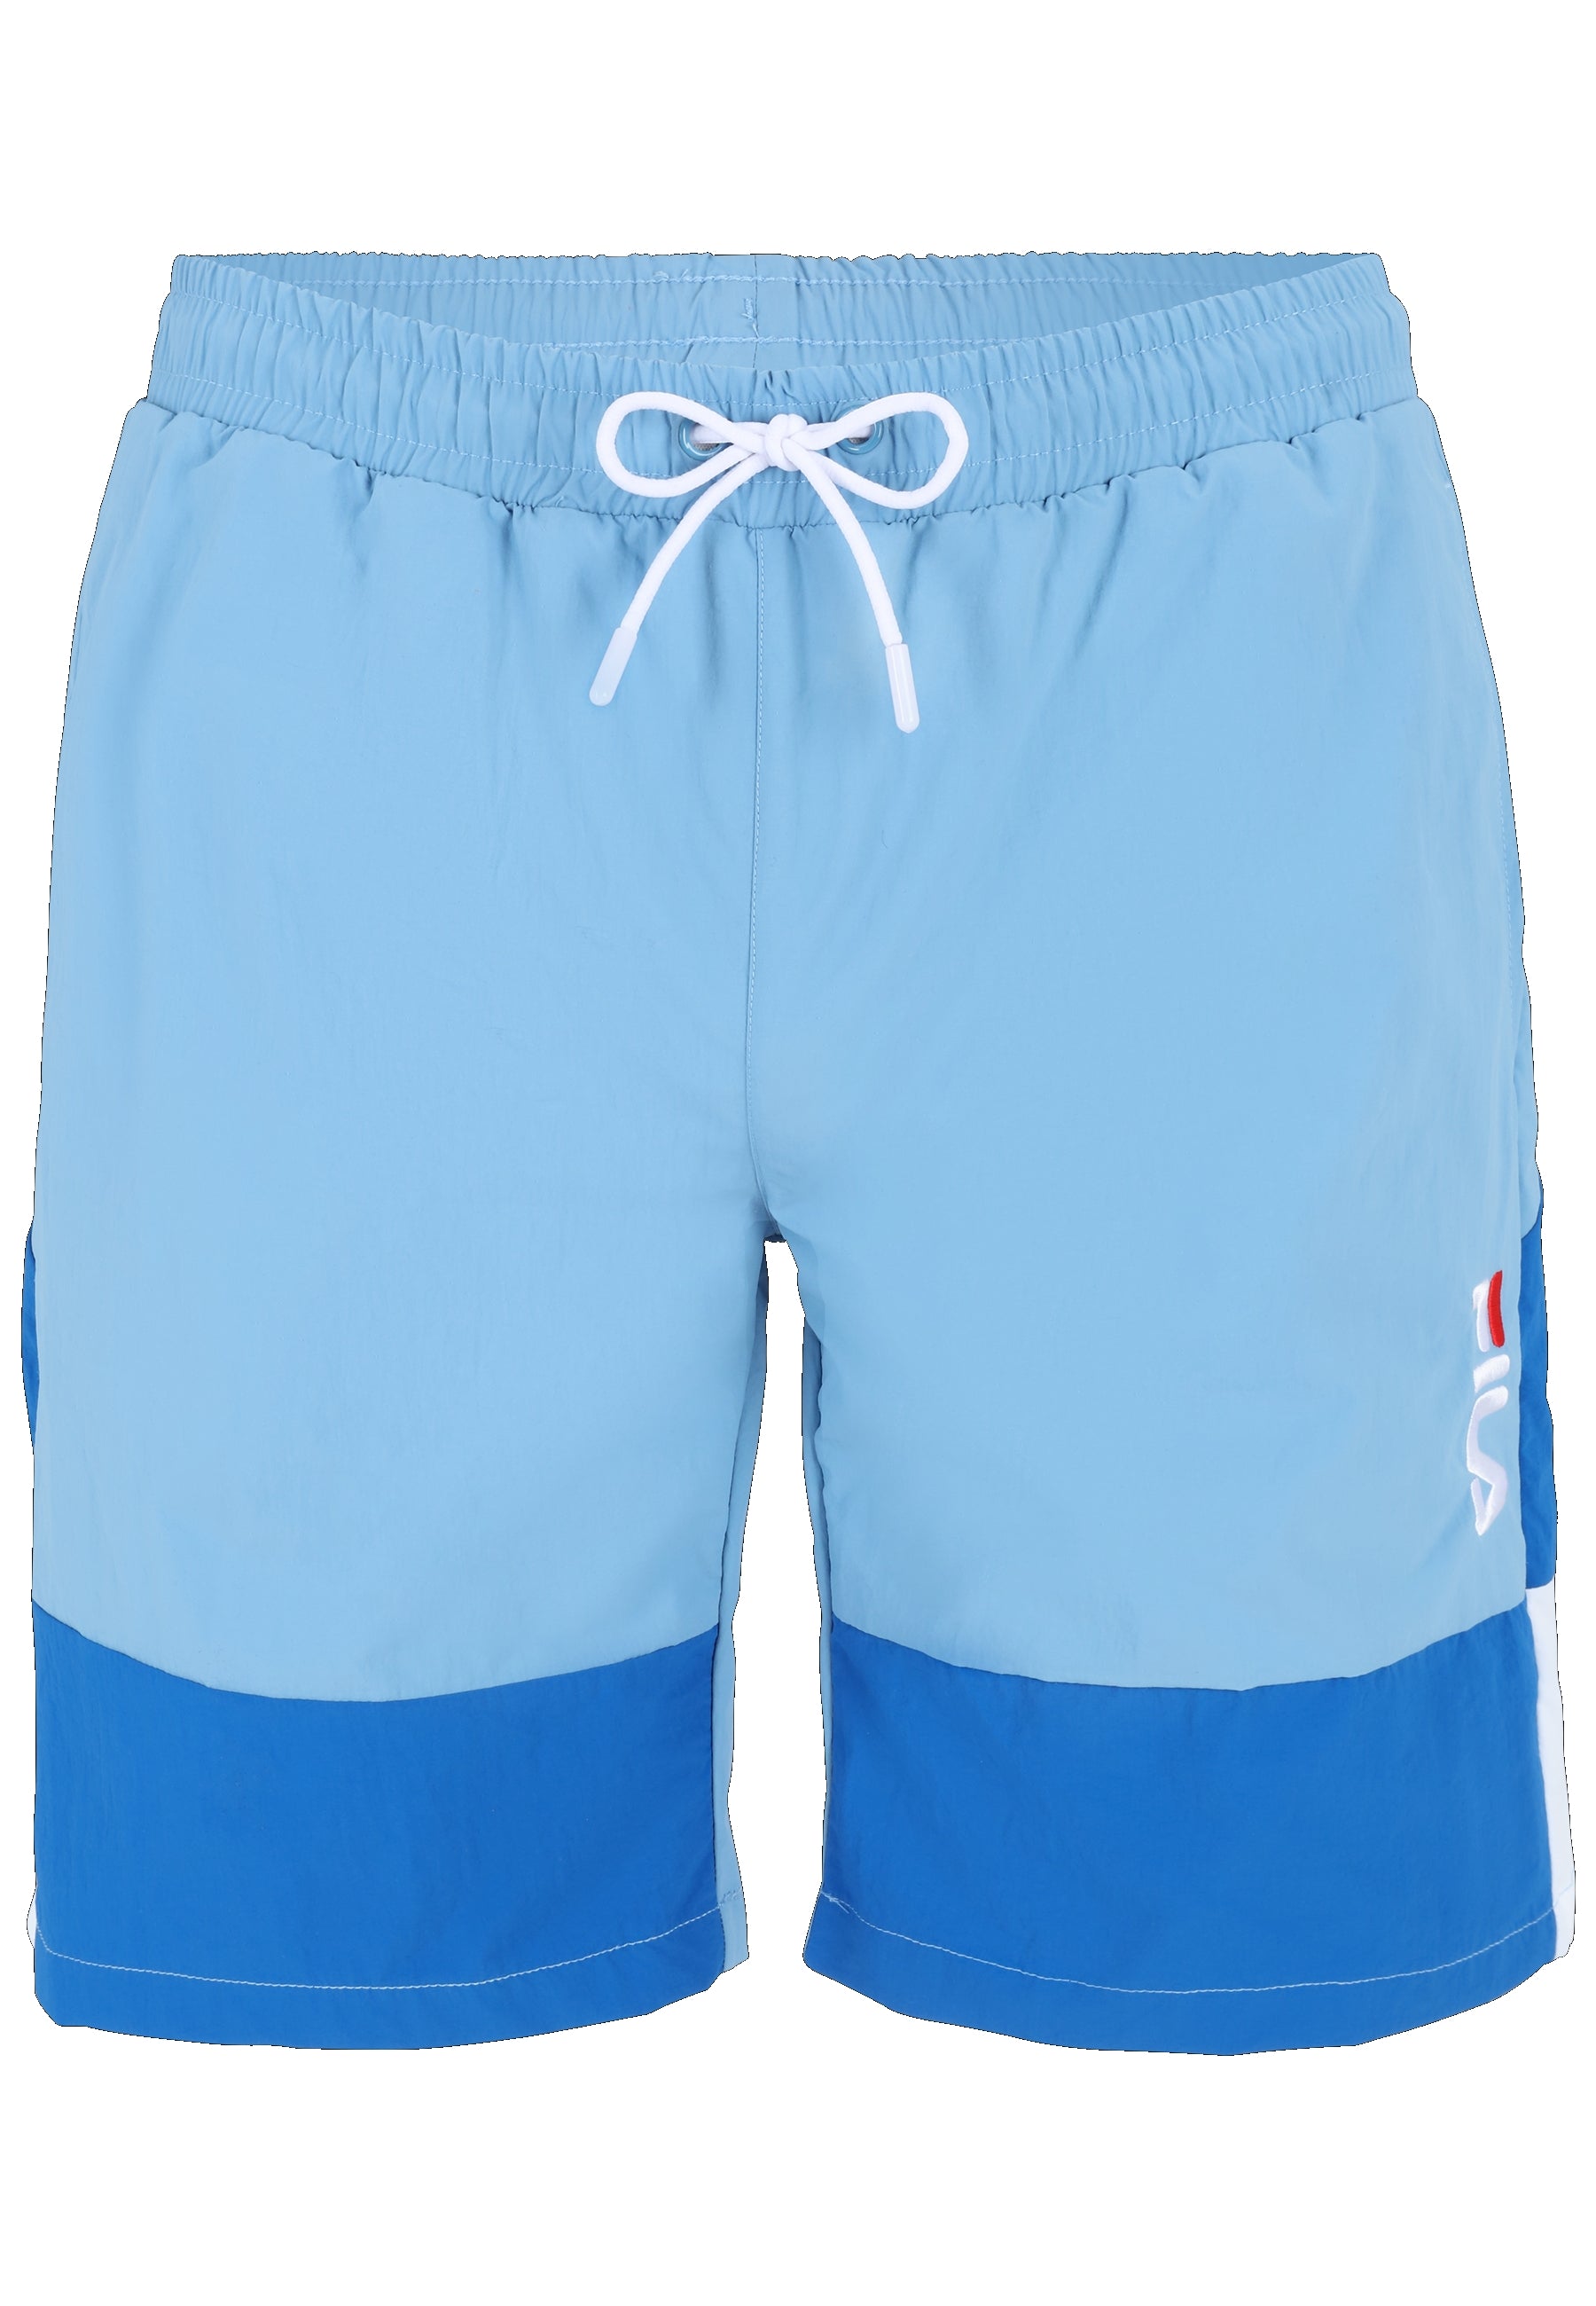 Sciacca Swim Shorts in Lichen Blue-Vallarta Blue-Bright White Badehosen Fila   